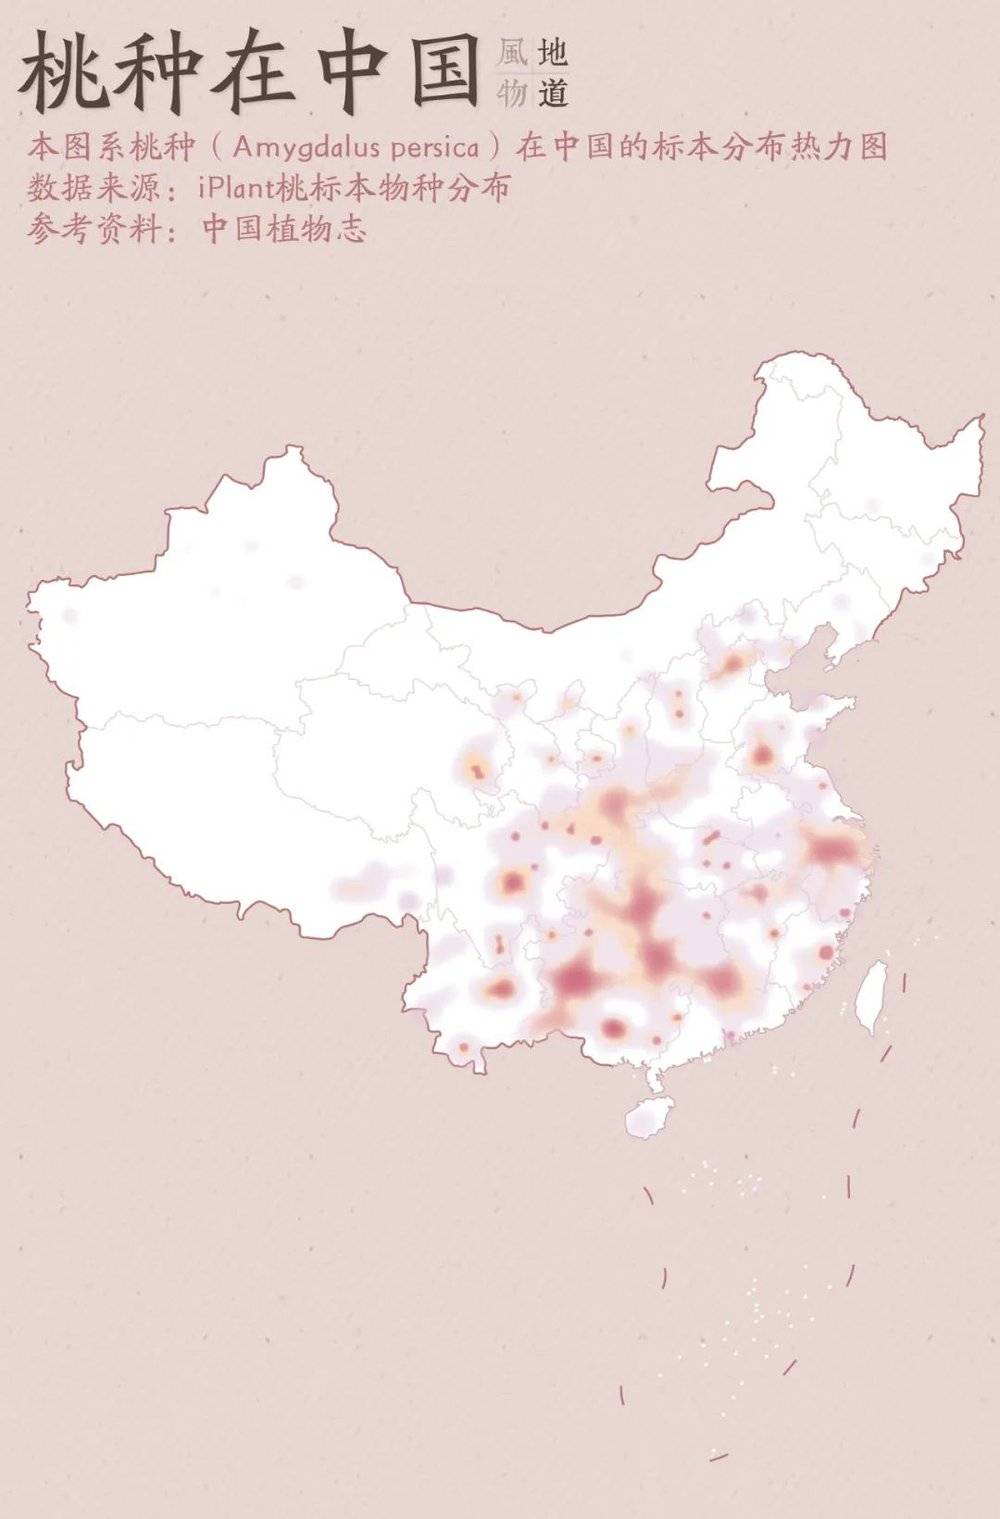 ▲ 桃种在中国的标本分布热力图，江浙沪地区是其中的产桃大区。 制图/Paprika<br>